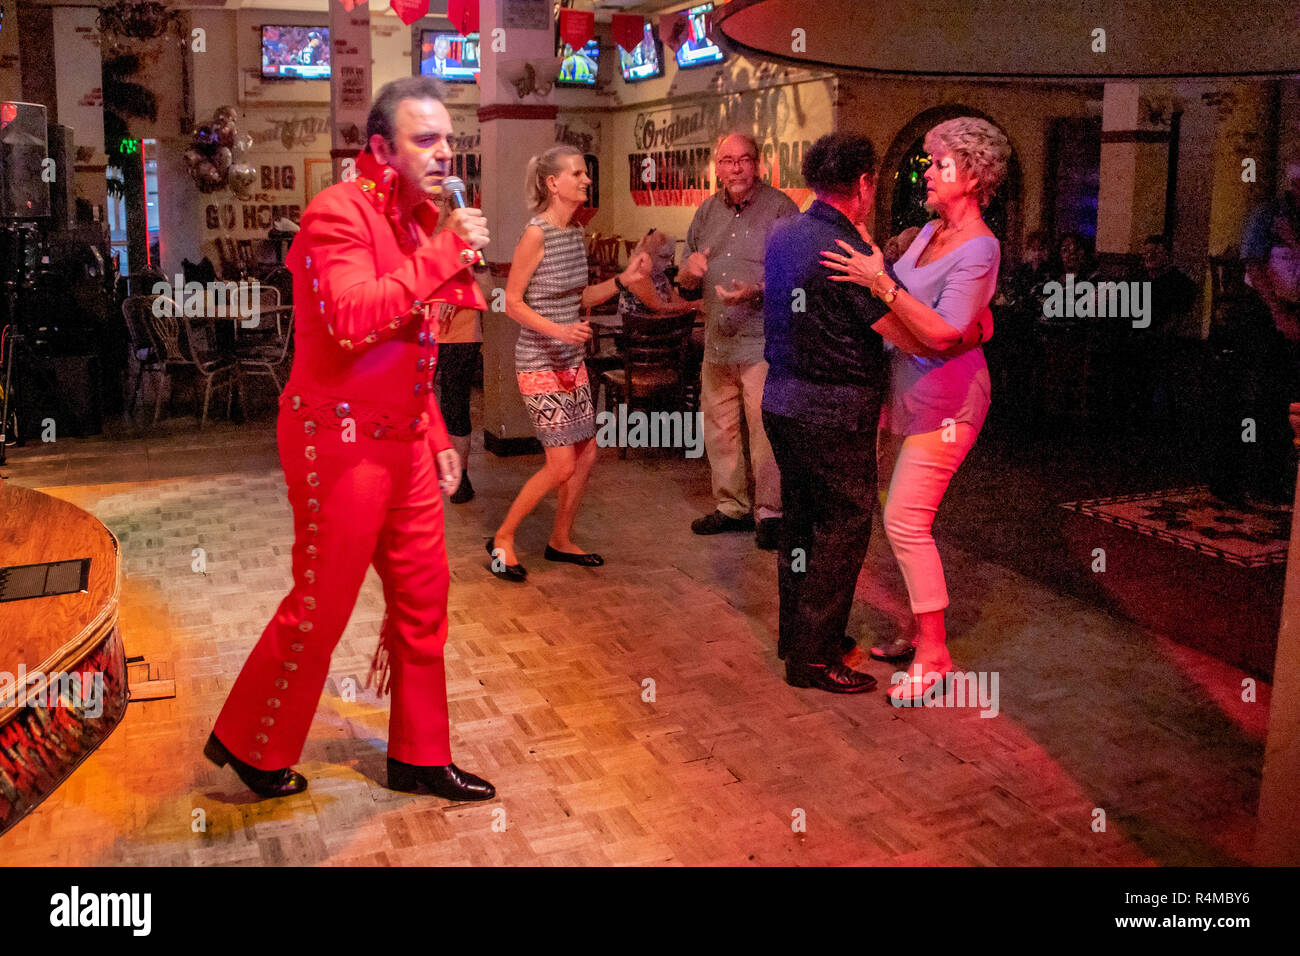 Das Tragen einer roten Overall, einer mittleren östlichen Amerikanischen Elvis Presley Imitator unterhält Erwachsene und Senioren bei einer Santa Ana, CA, Pub. Stockfoto